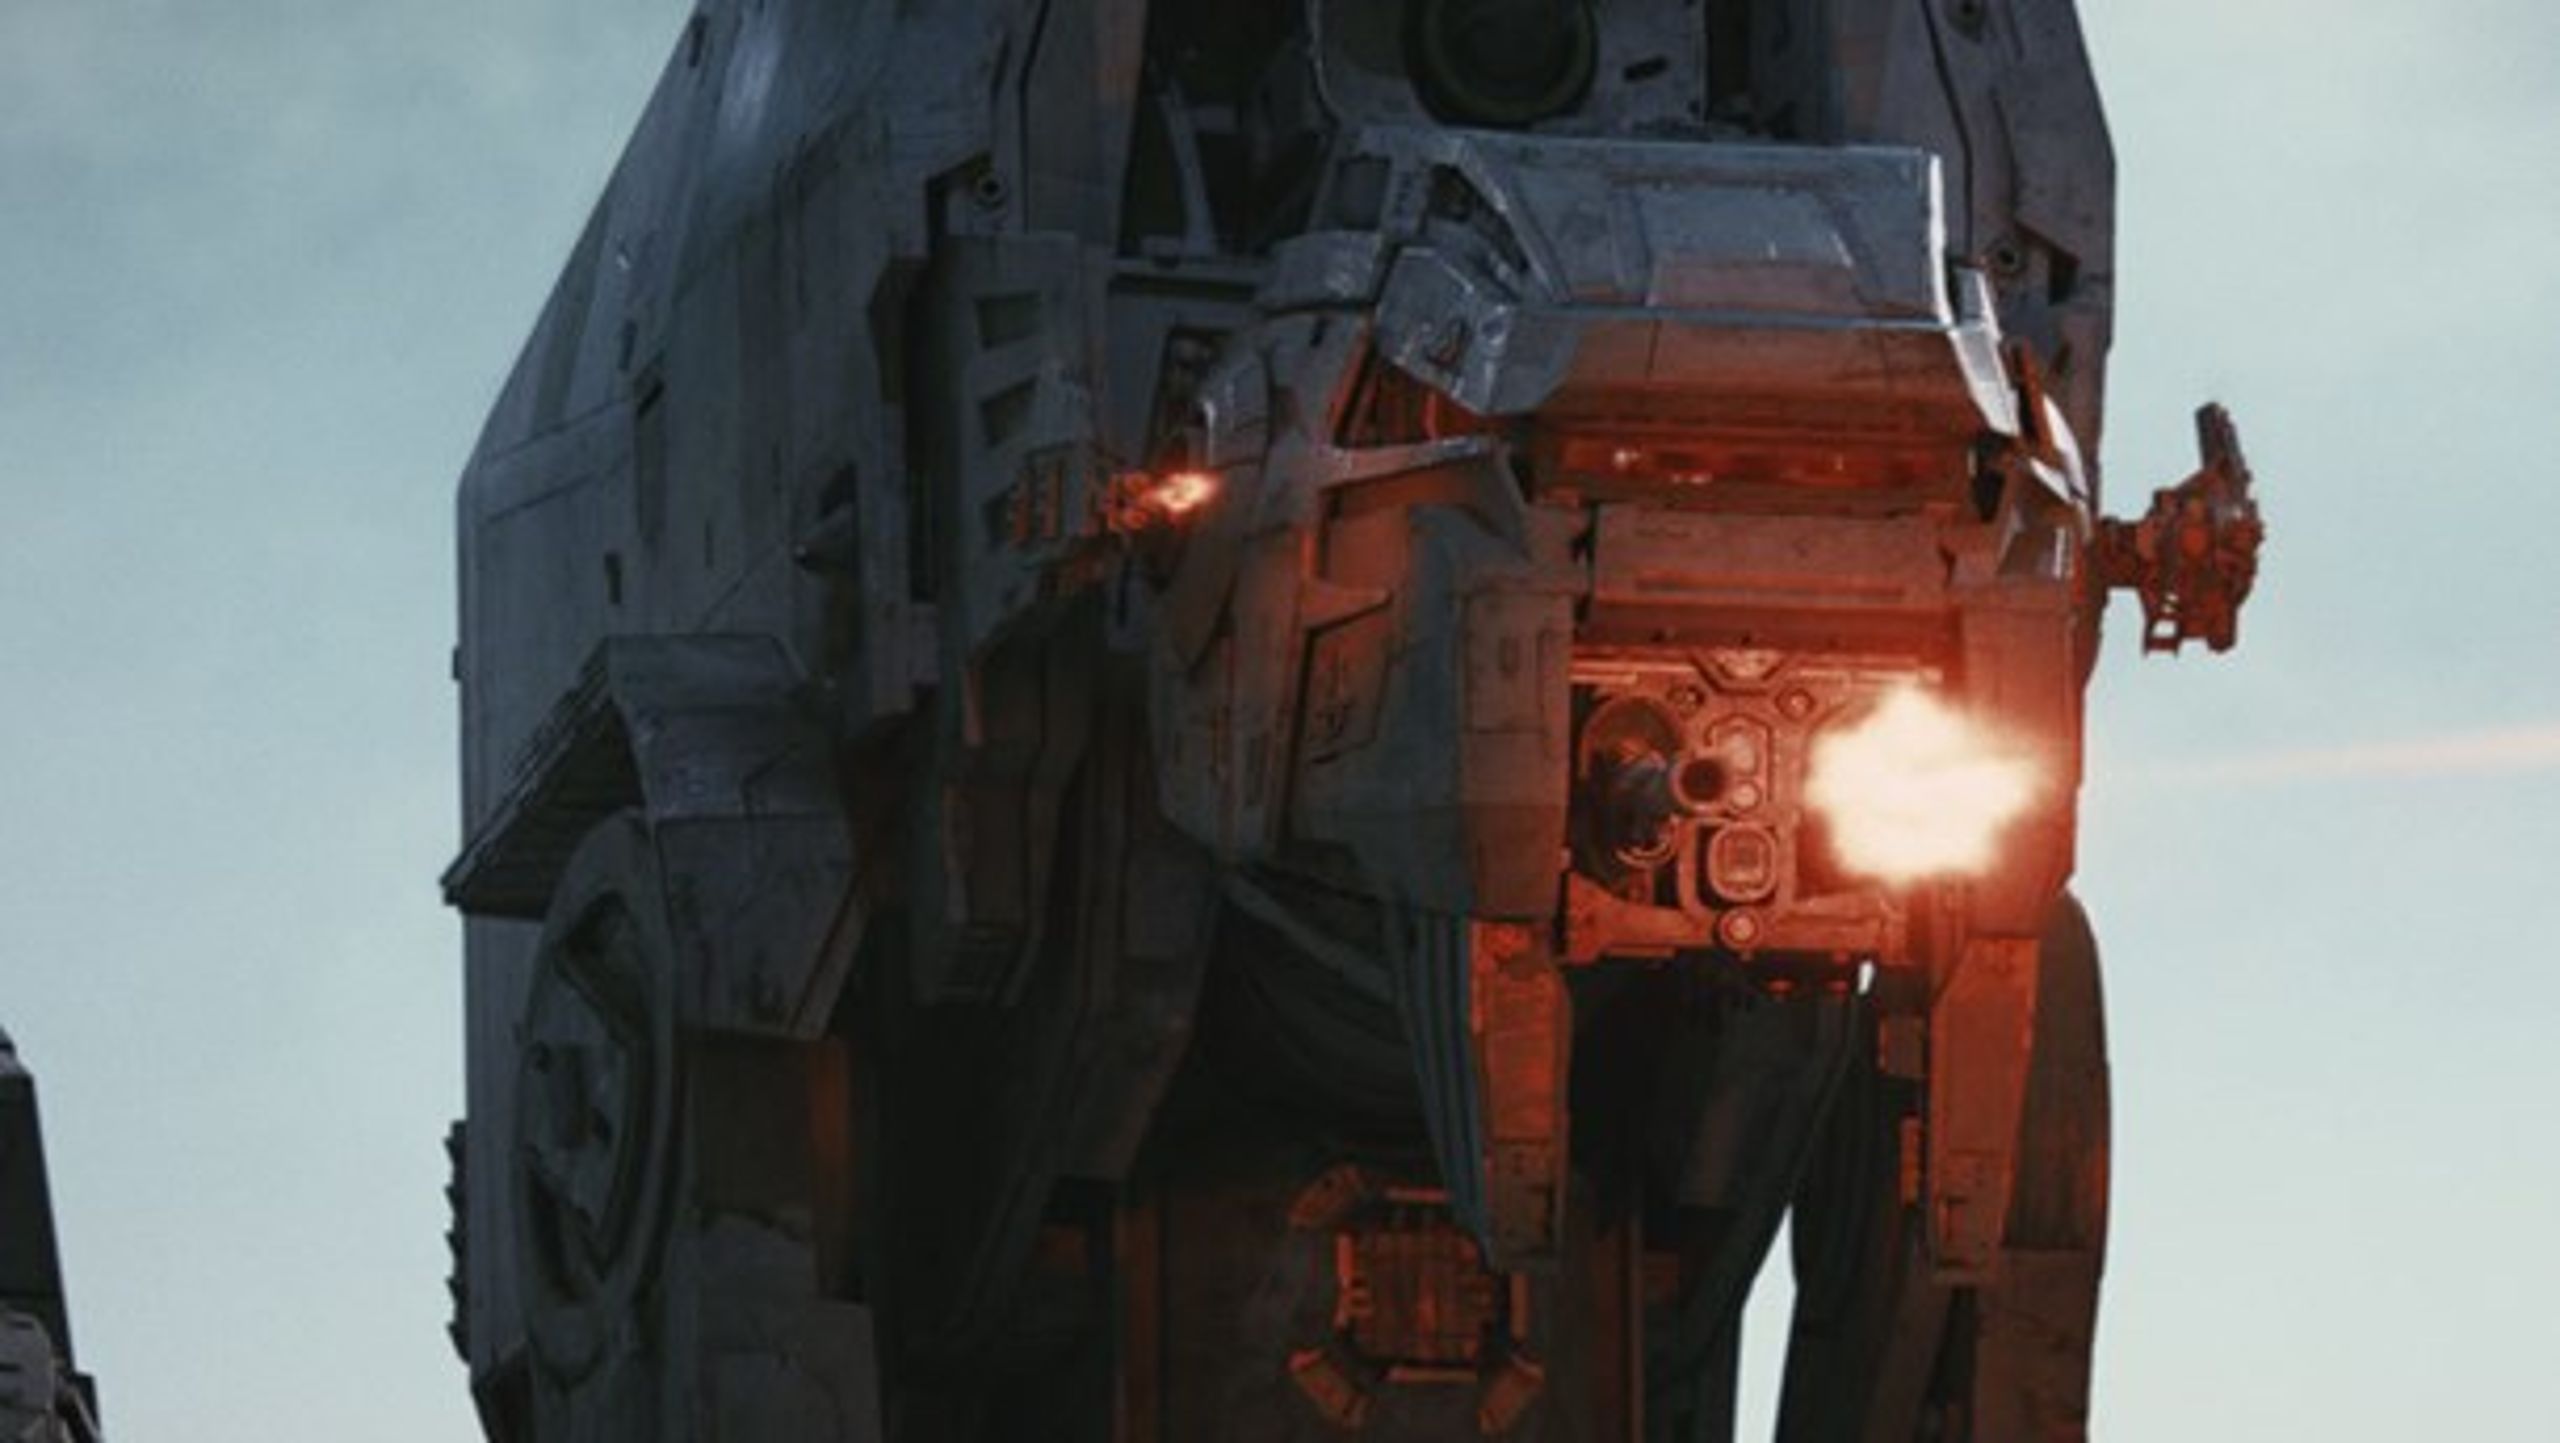 IMPERIAL WALK: Den danske virksomhed Ghost VFX har førhen leveret special effects til to Star Wars-film. Nu oplever de i stigende grad at blive afvist til lignende opgaver.